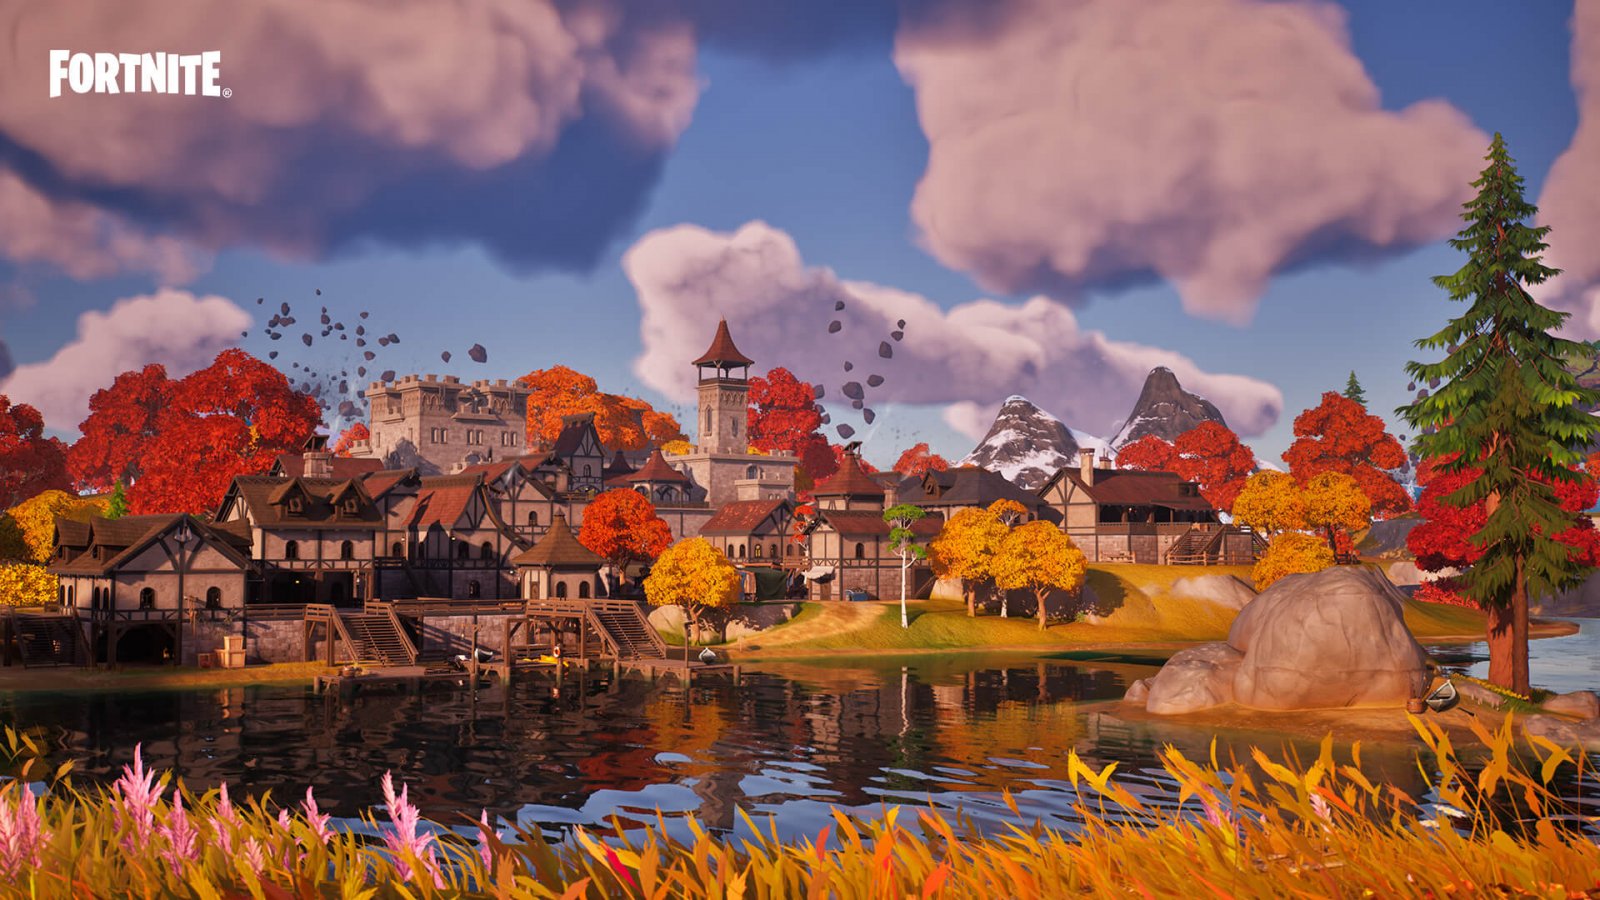 Fortnite Capitolo 4 sfrutta l'Unreal Engine 5.1 su PS5, Xbox Series X|S e PC